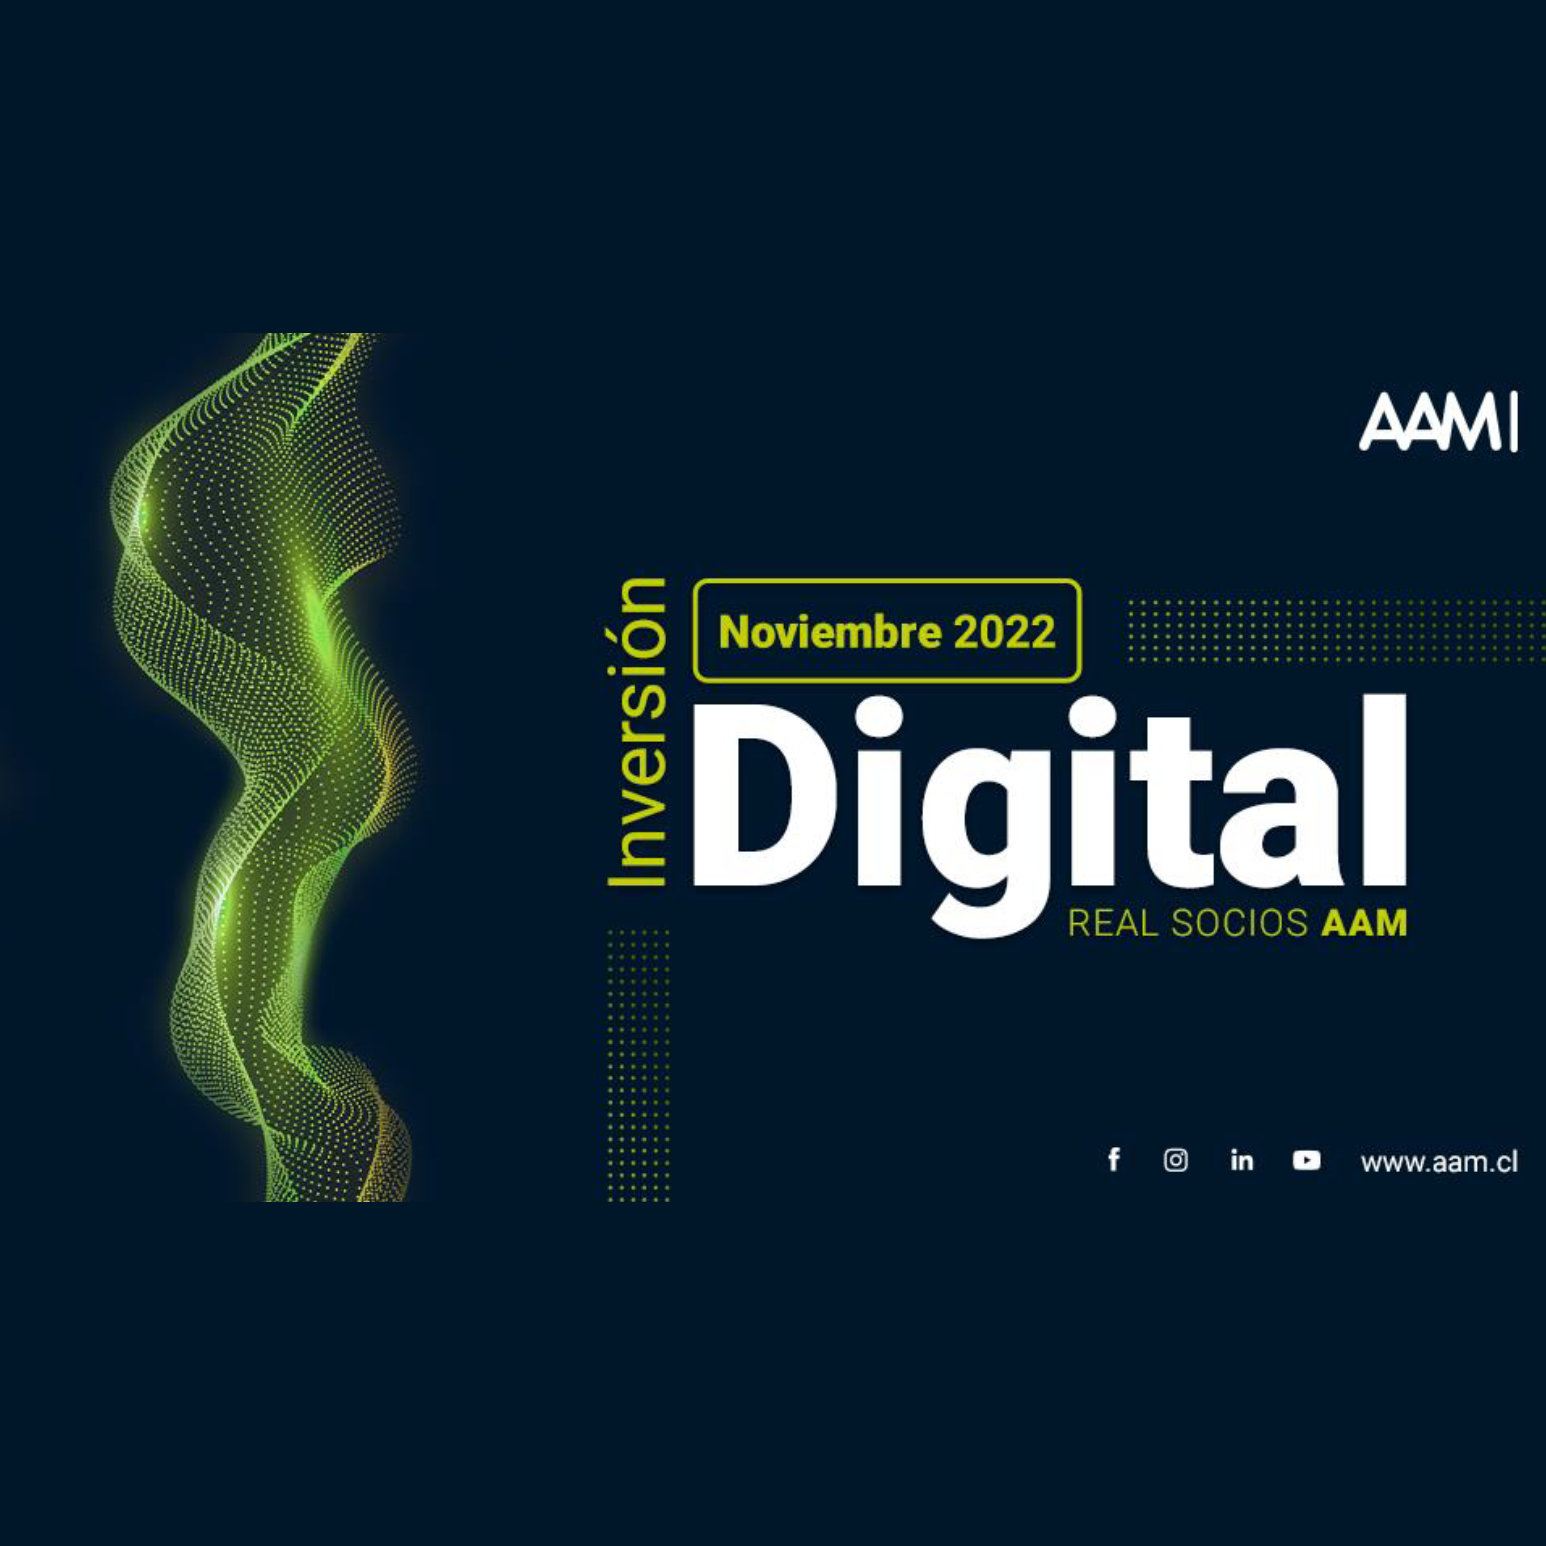 Estudio: Inversión digital real socios AAM – noviembre 2022